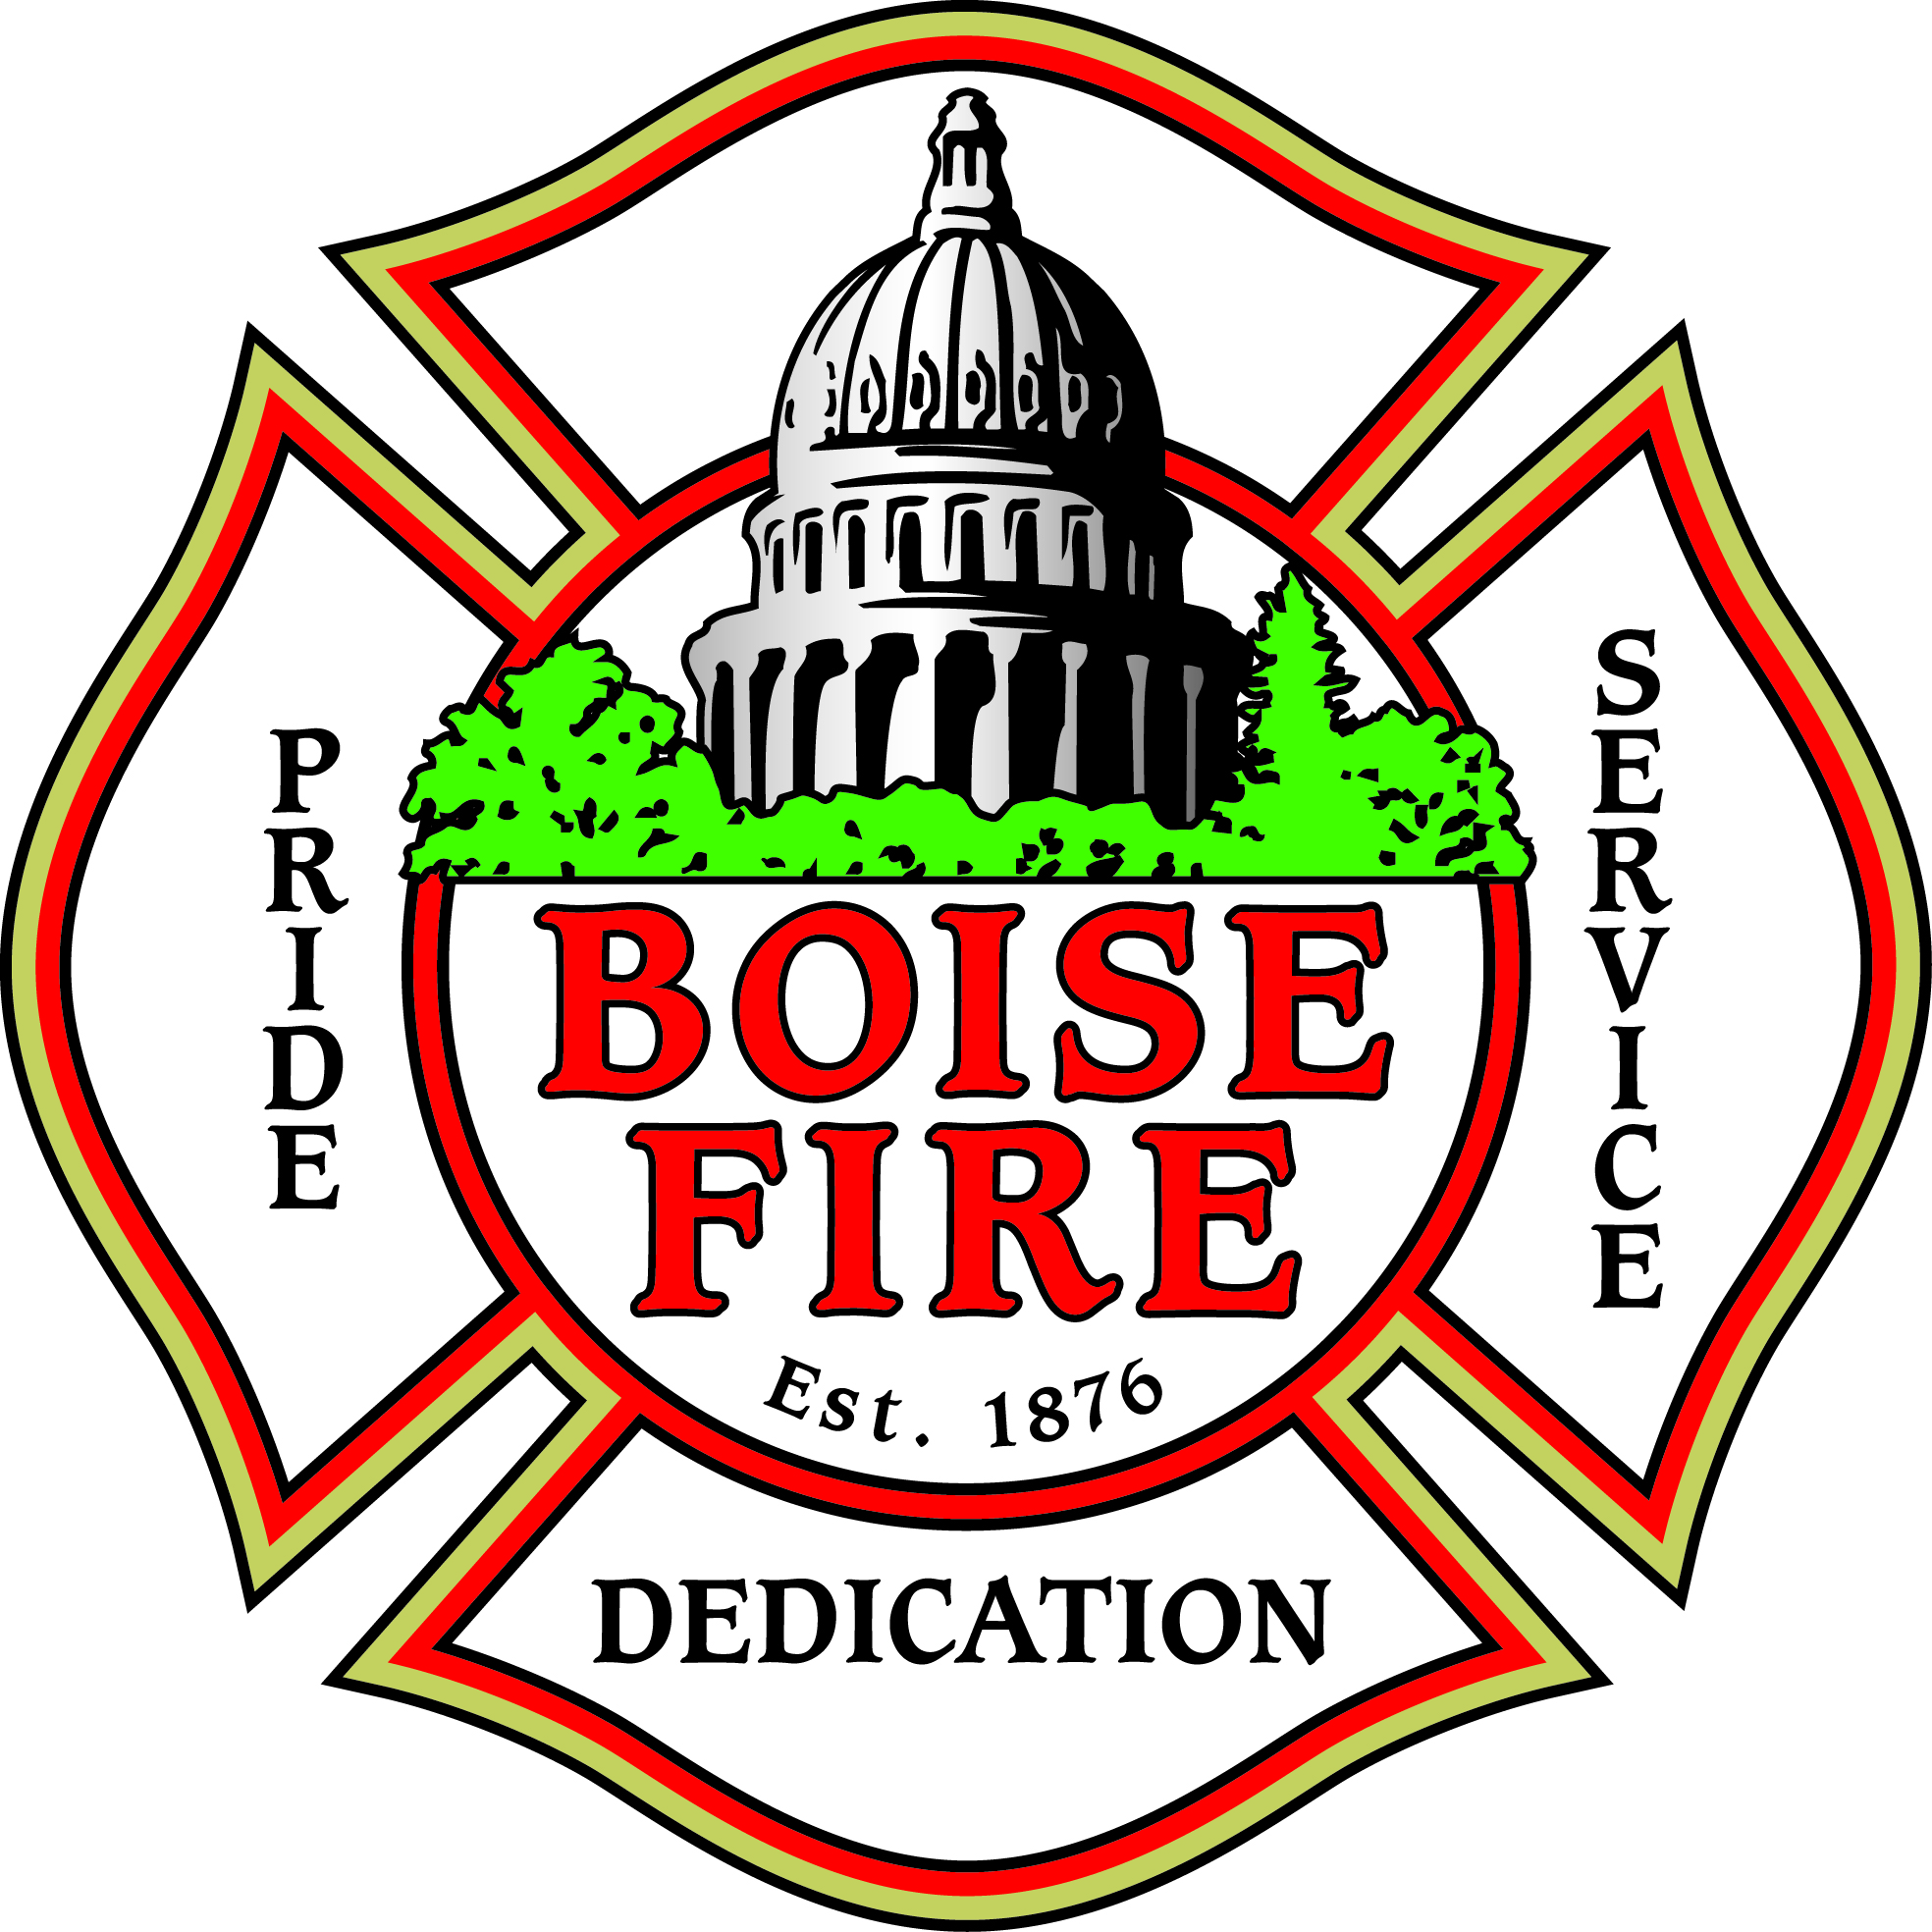 Boise Fire Est 1876 - Pride, Dedication, Service